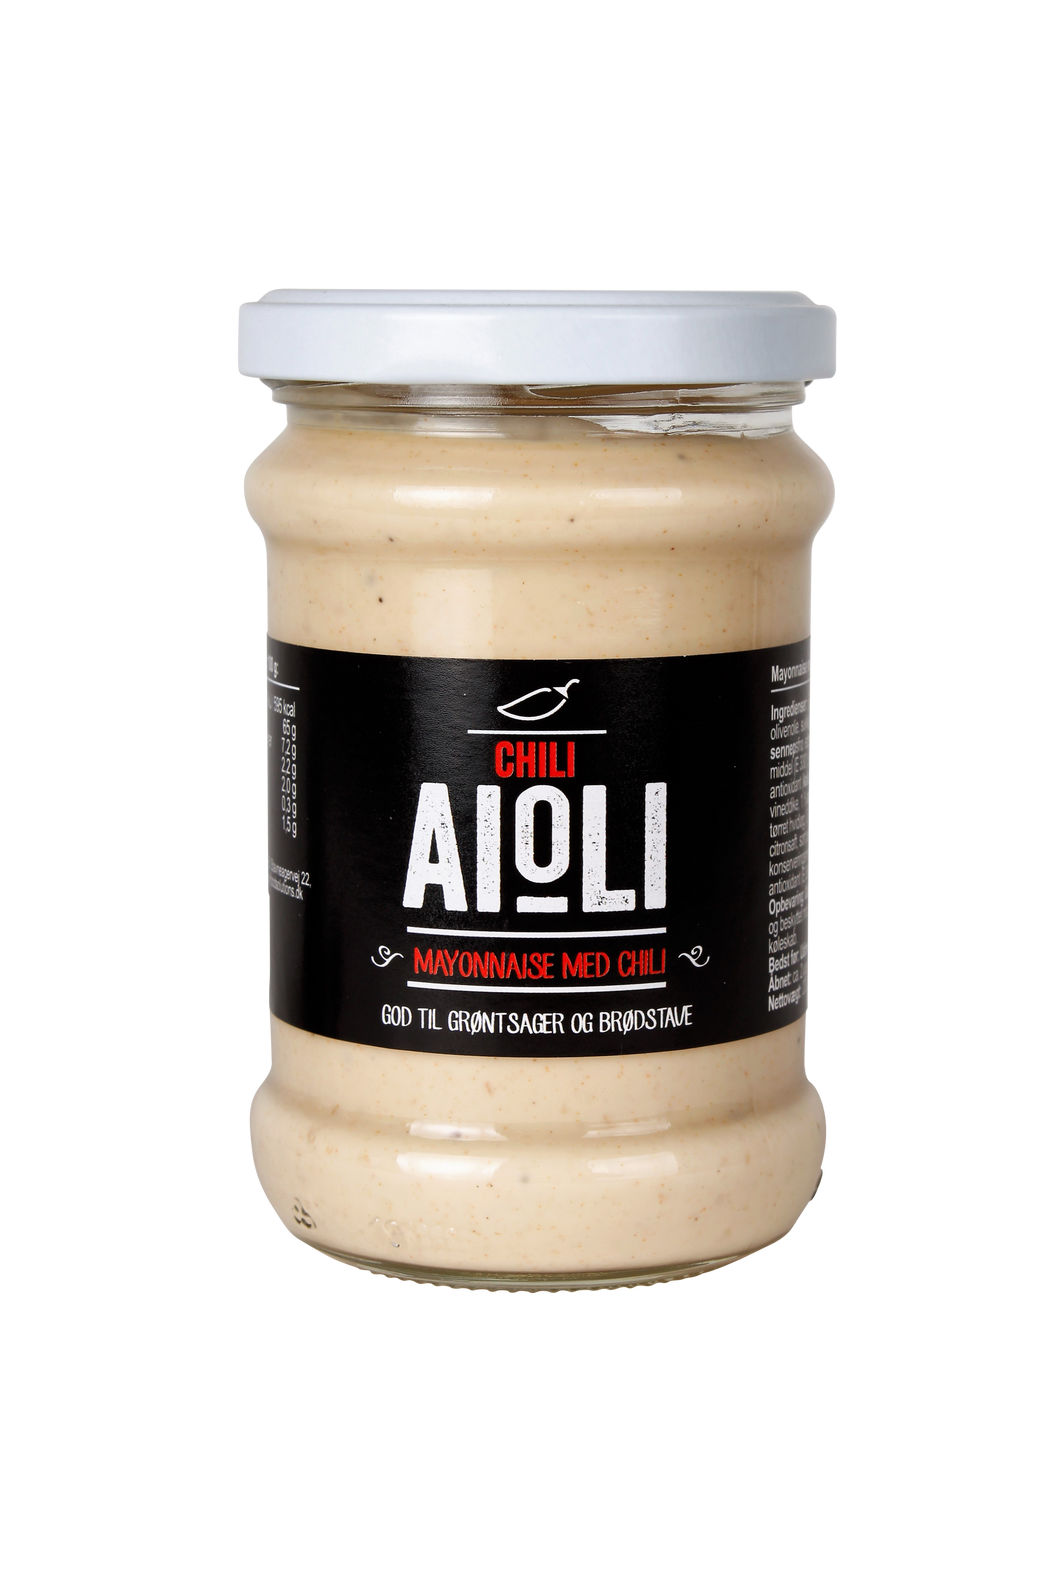 Aioli with Chili